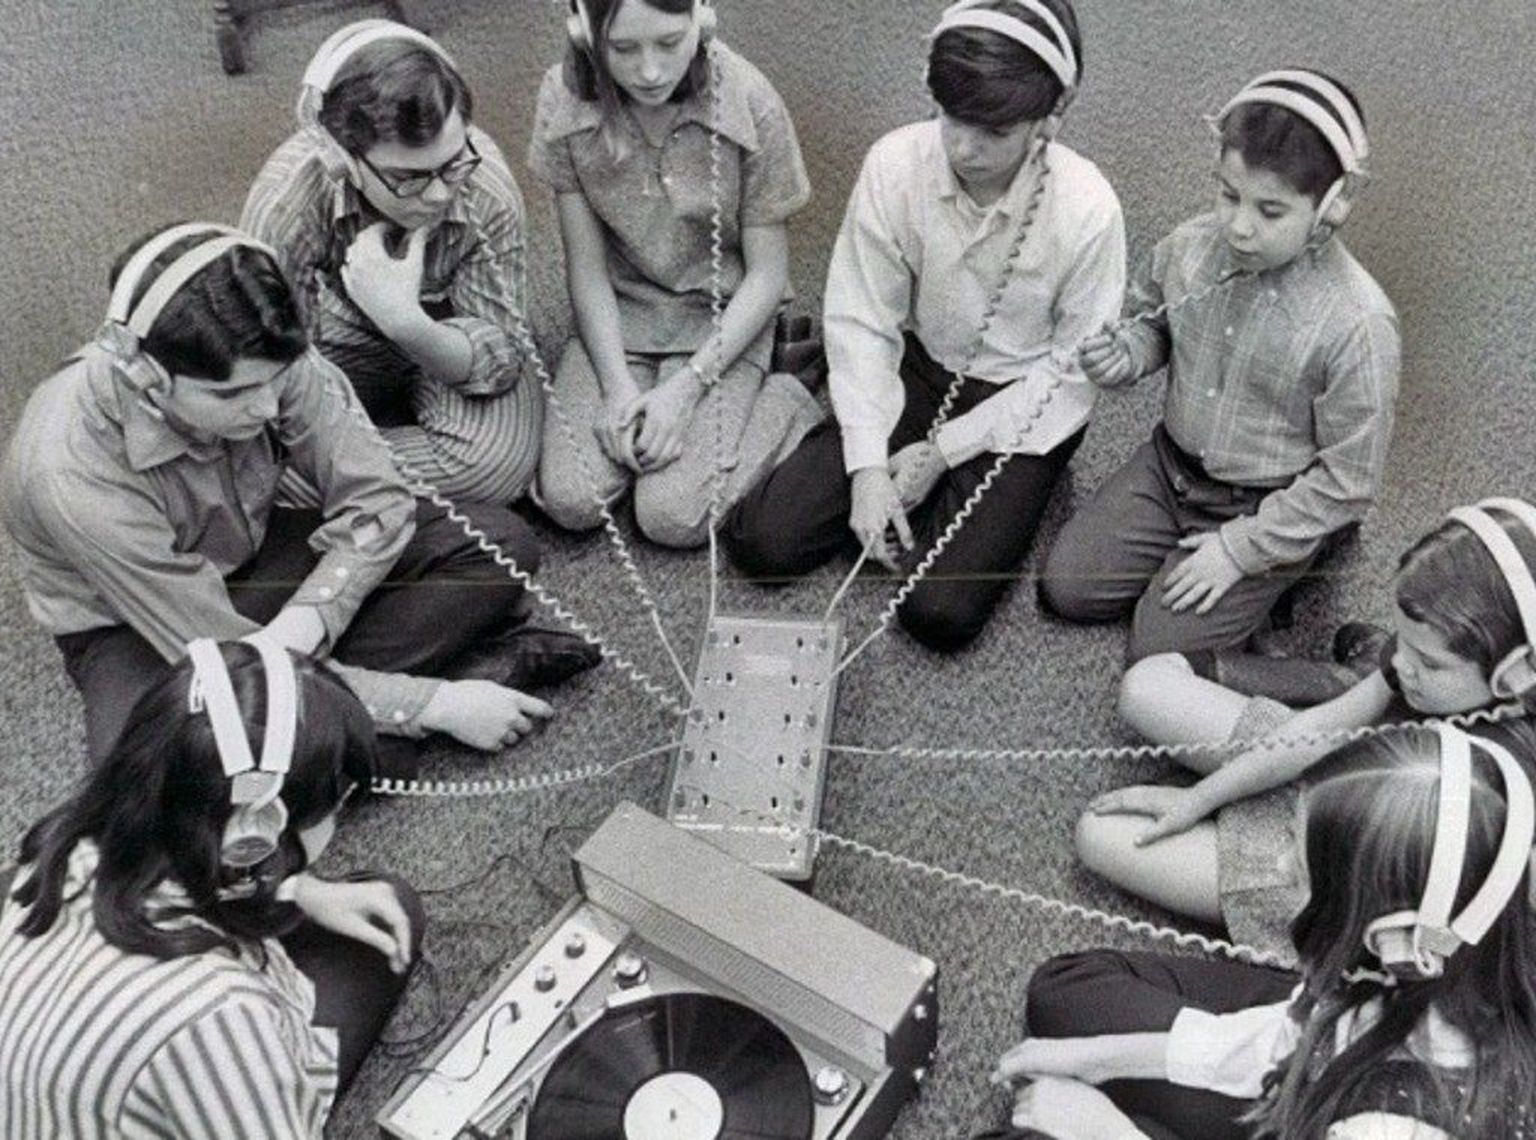 Noored muusikat kuulamas. Foto on illustratiivne